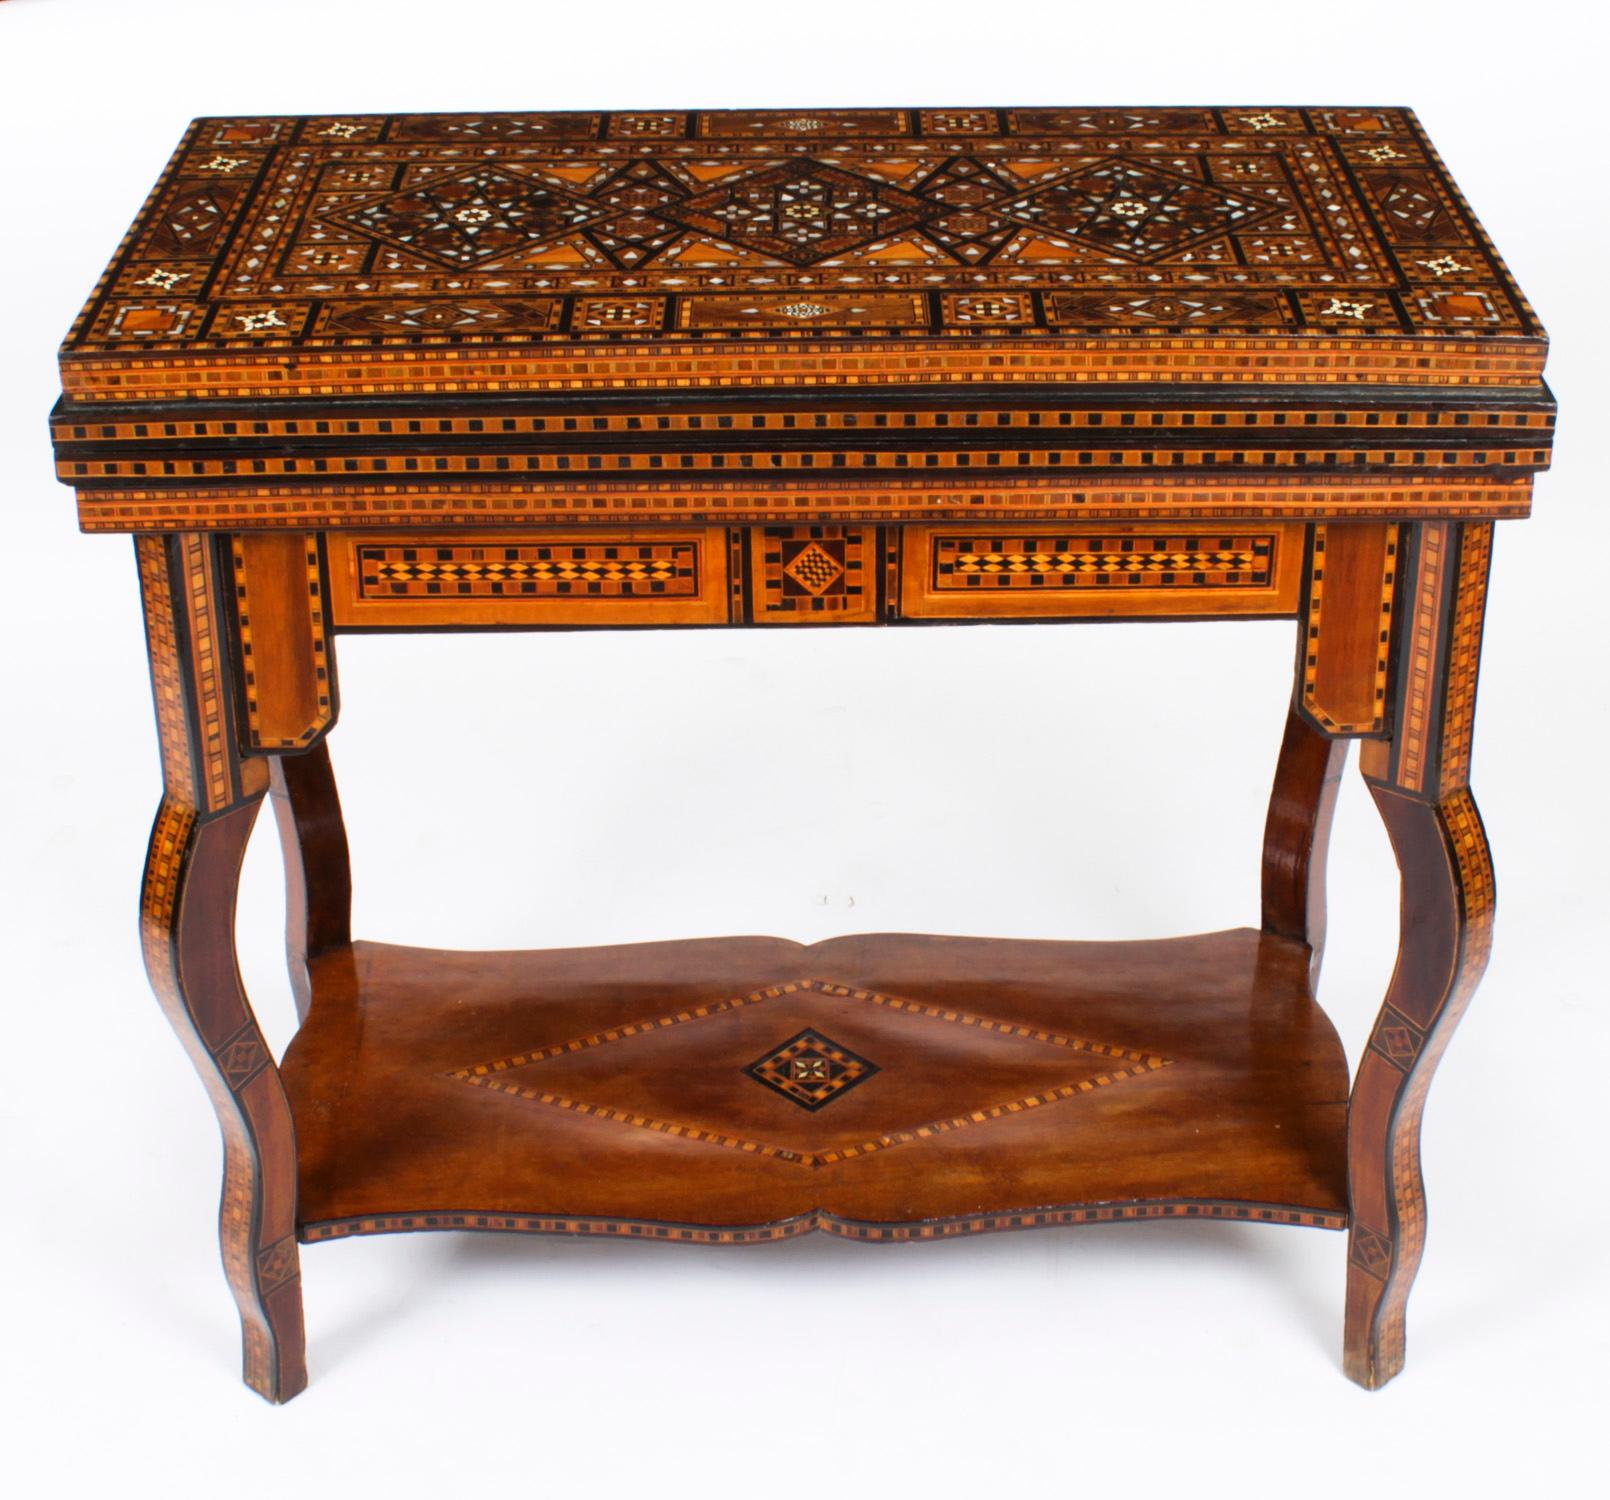 Cette table de jeu en damas syrien richement incrustée date des environs de 1900 et présente de multiples incrustations géométriques et asymétriques de divers spécimens de bois
 
Le couvercle à charnière s'ouvre pour révéler un intérieur incrusté